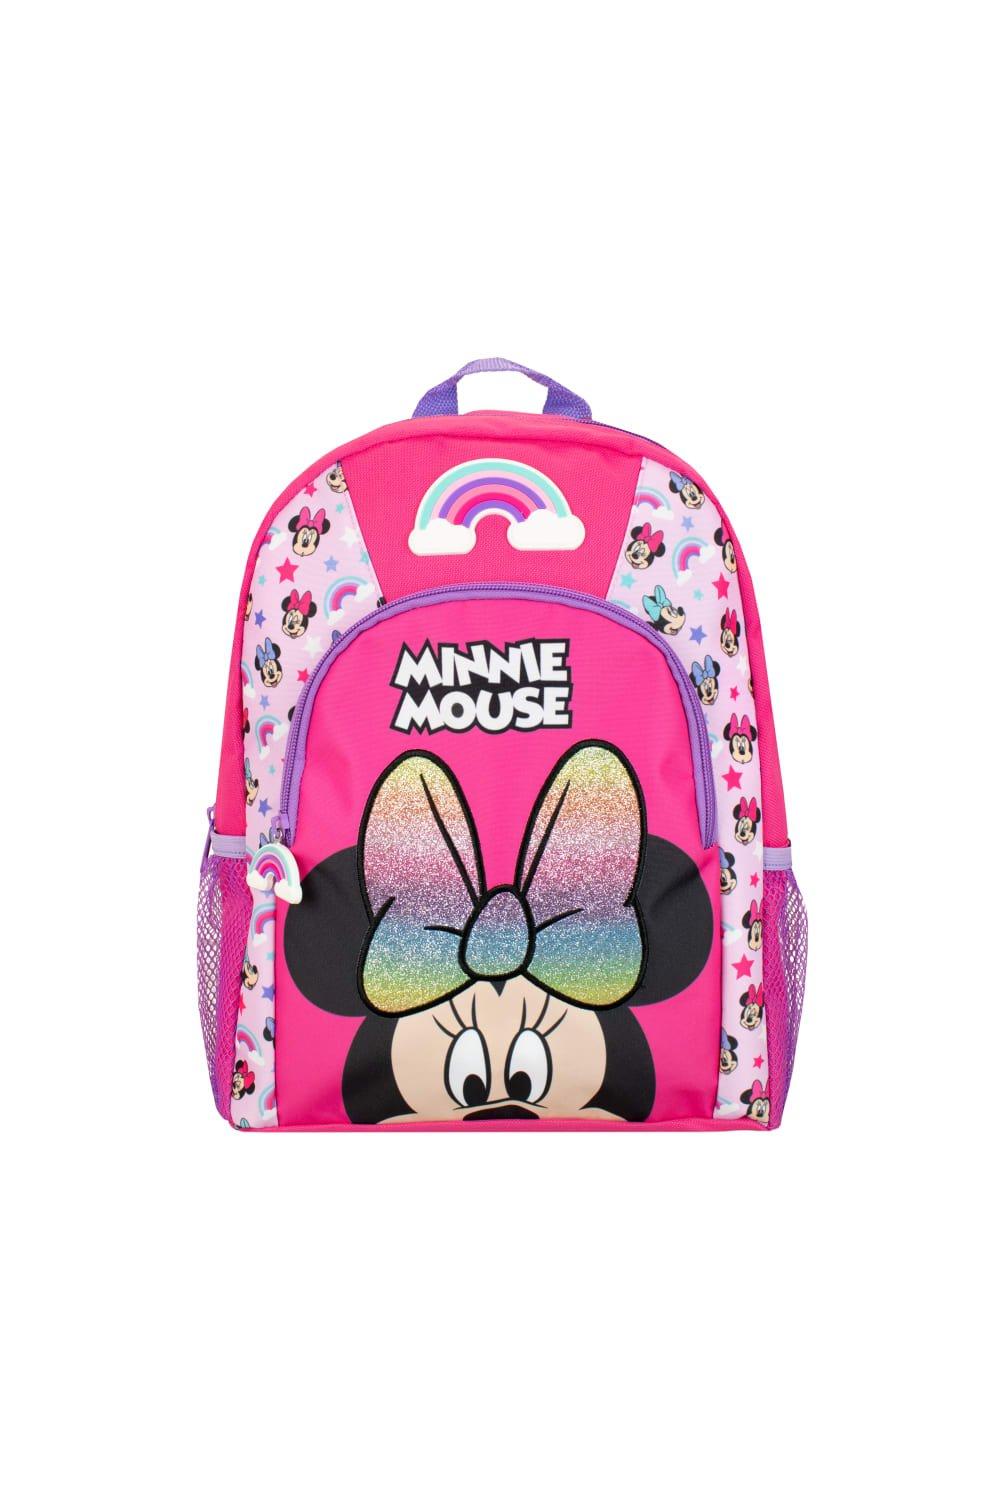 Детский рюкзак с Минни Маус Disney, розовый рюкзак с мультипликационным изображением диснея плюшевая школьная сумка с микки маусом минни винни пухом для детского сада детские школ